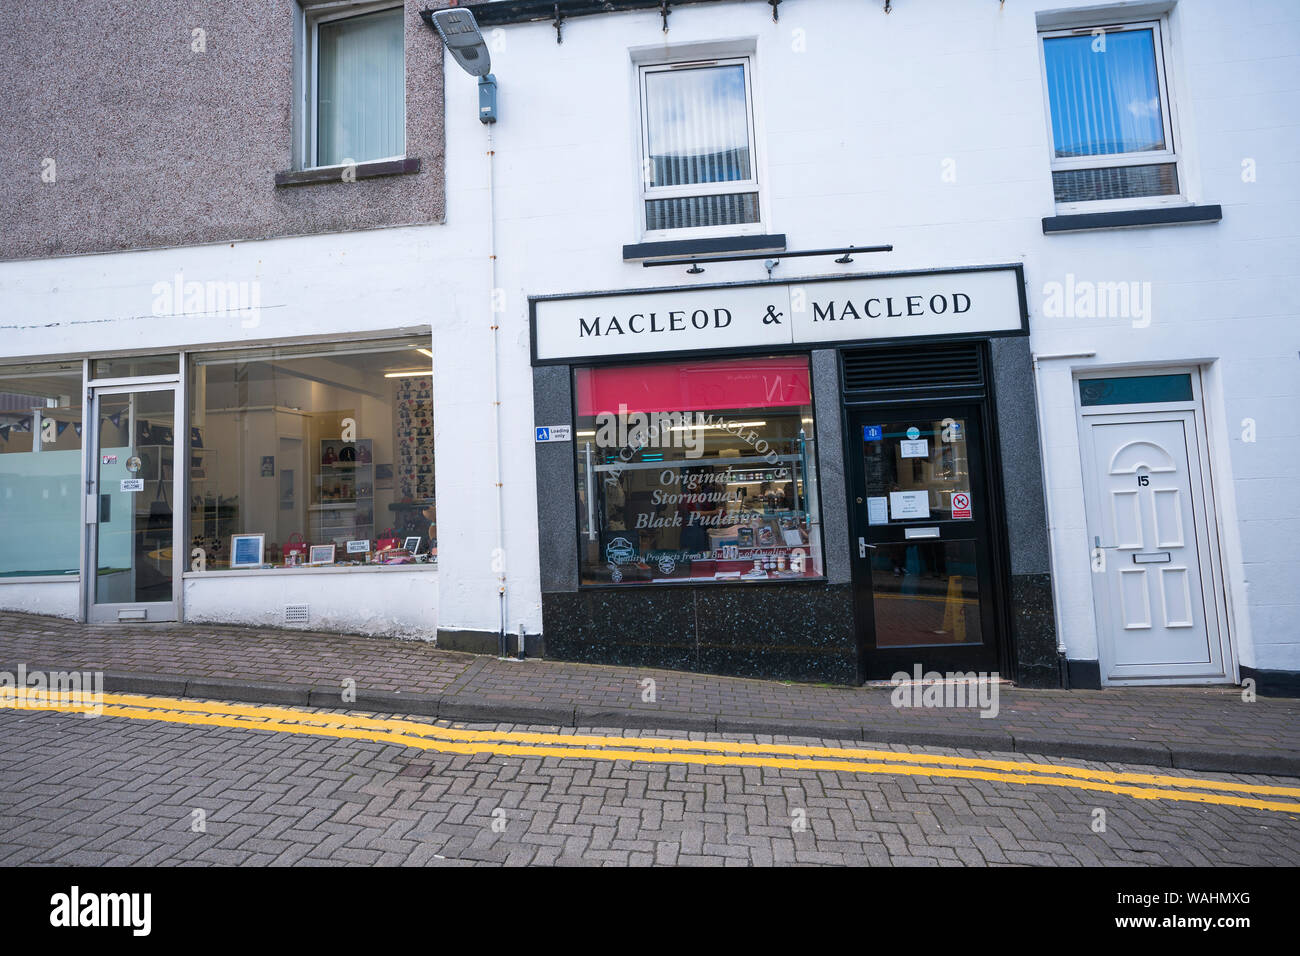 Äußere der Macleod & Macleod Metzger, wo der Insel taxierten Blutwurst oder Blutwurst, verkauft wird, Stornoway auf der Insel Lewis, Schottland, Großbritannien, Stockfoto